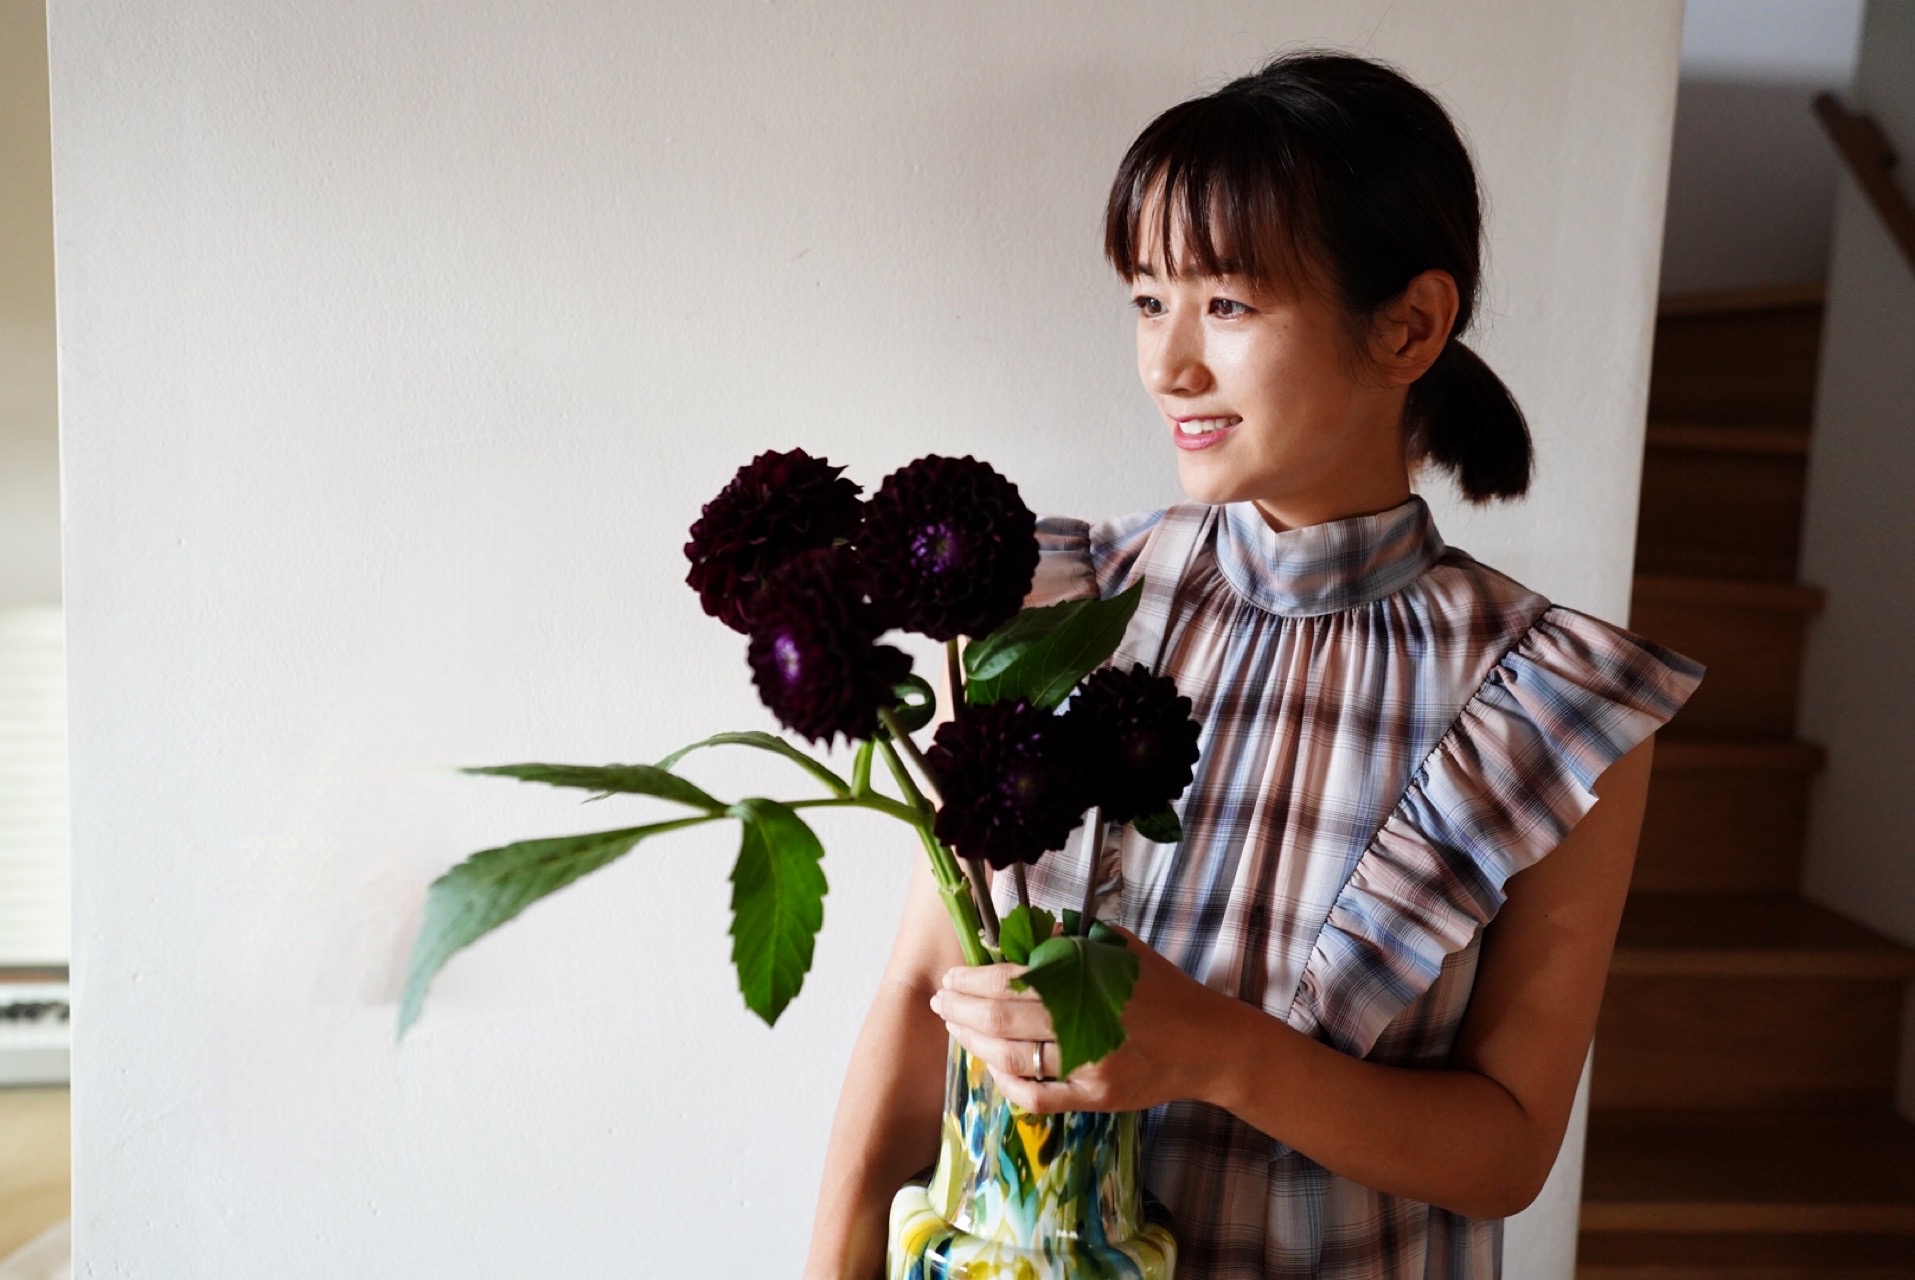 「秋を感じて飾りたくなるお花」。フラワーアーティスト・前田有紀さんが選ぶ、秋におすすめの花たち。